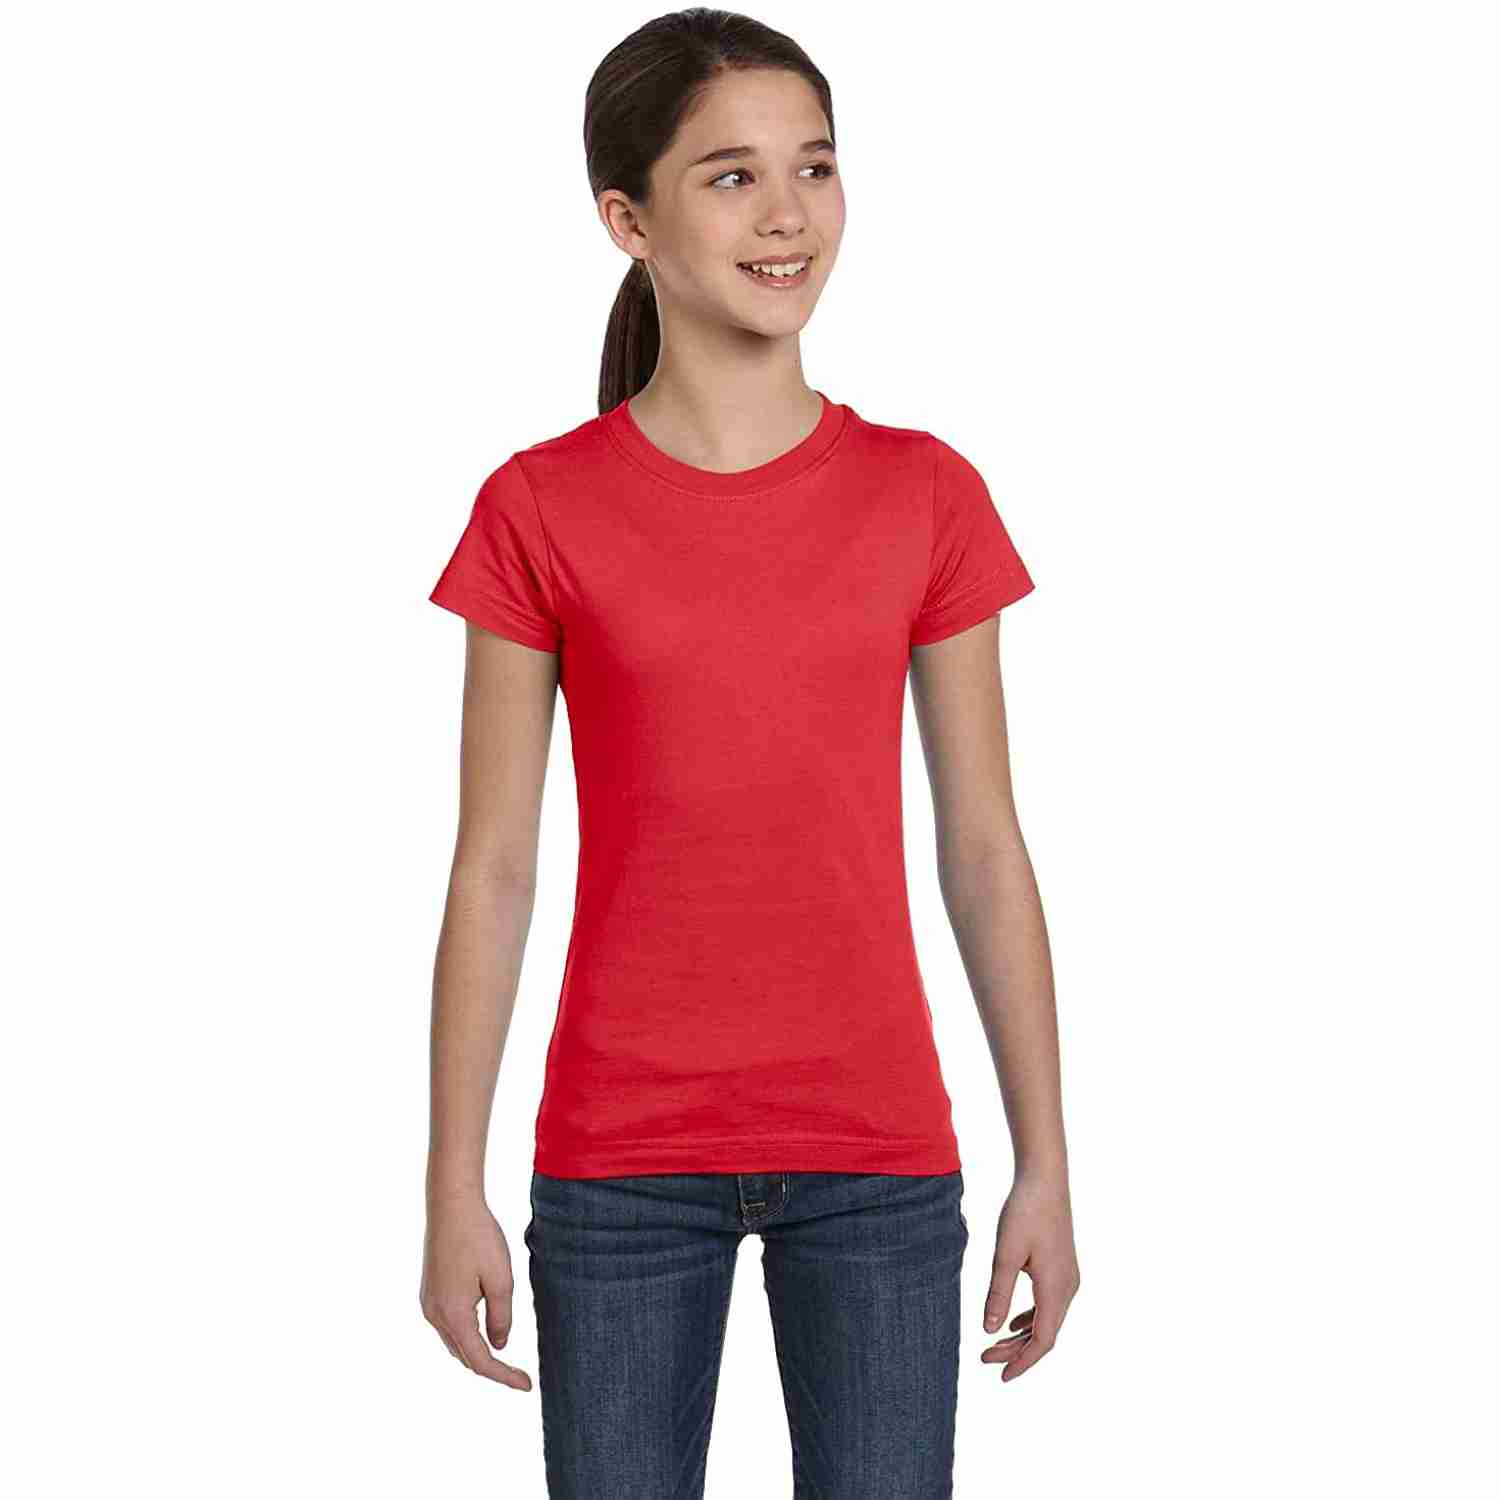 girls-short-sleeve-shirt-teen-t-shirt with discount code